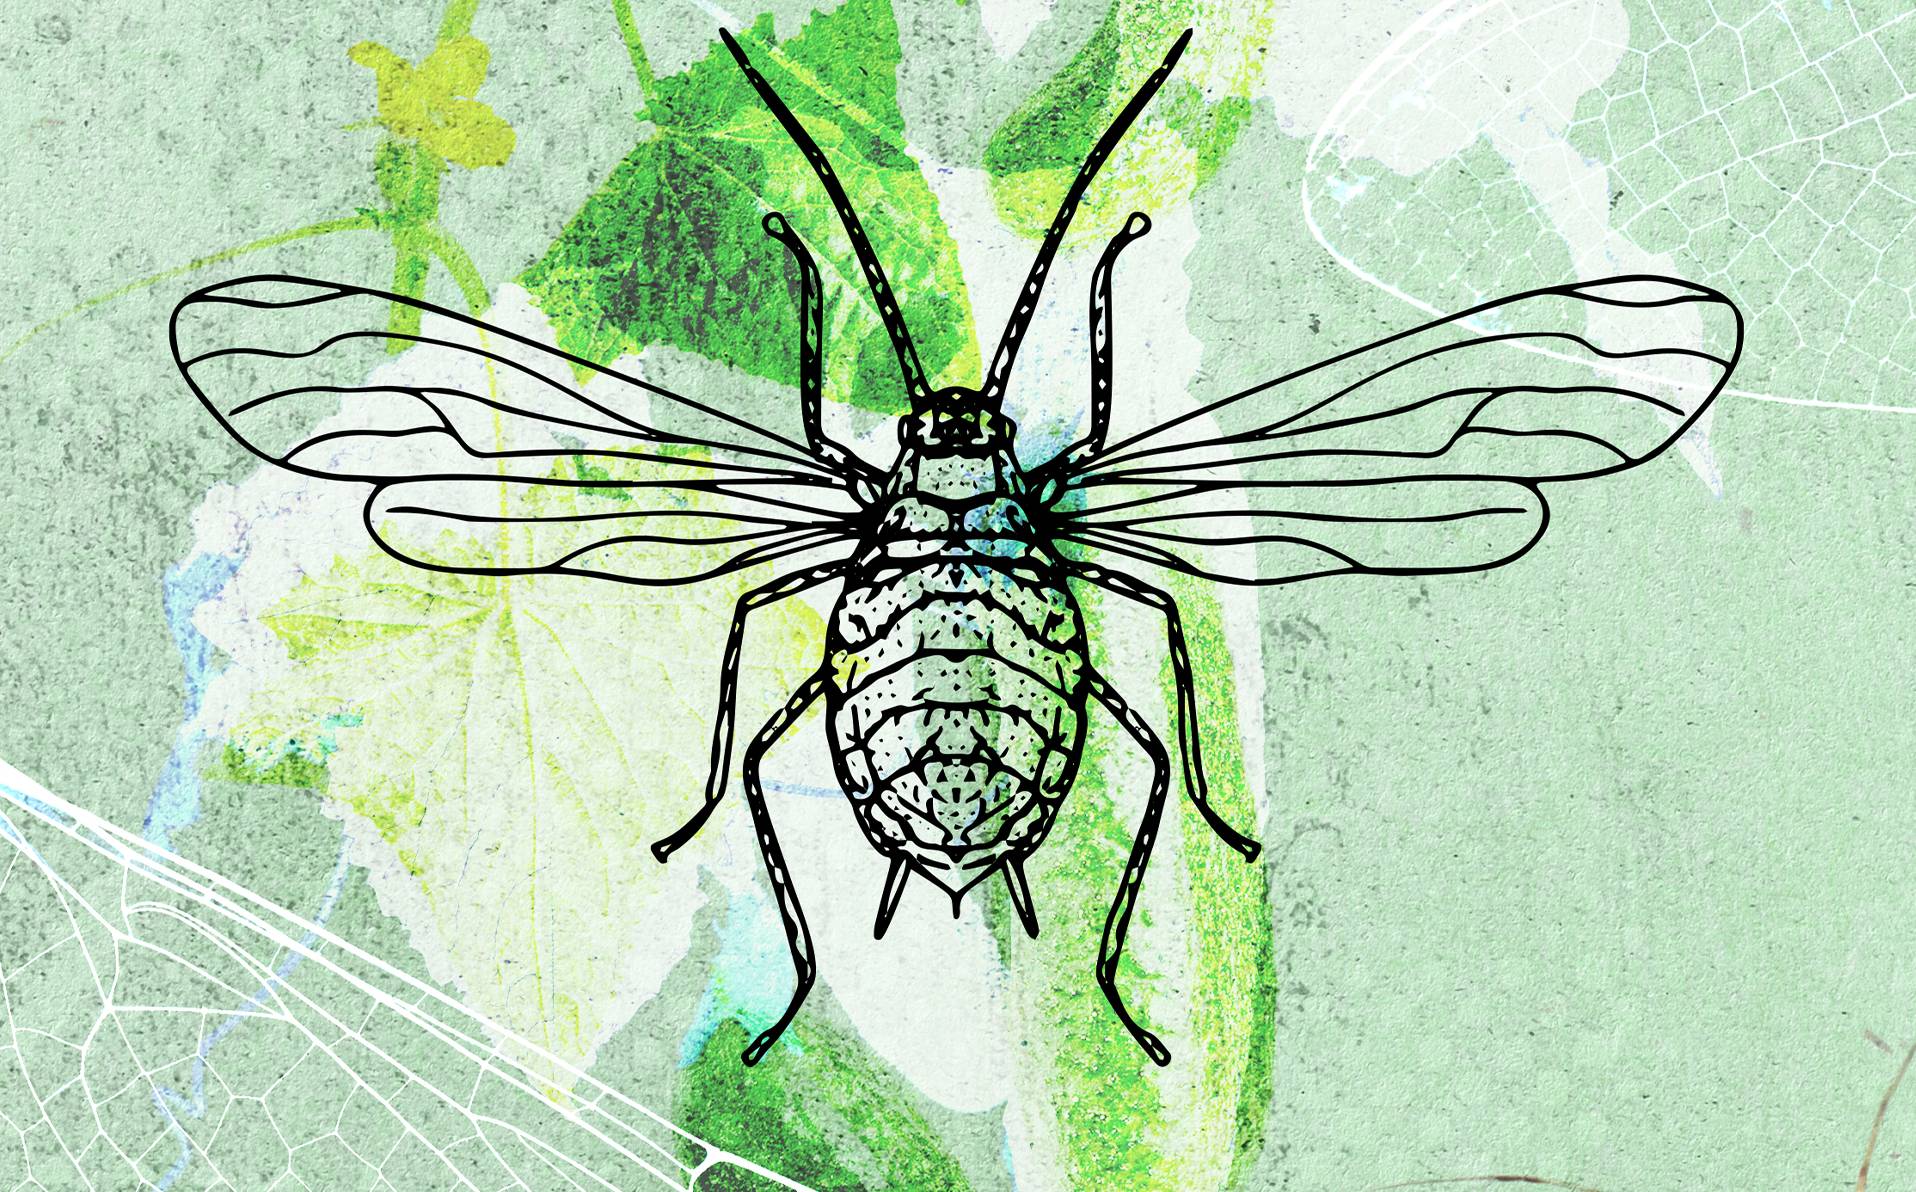 illustration de virus qui font pousser des ailes aux insectes